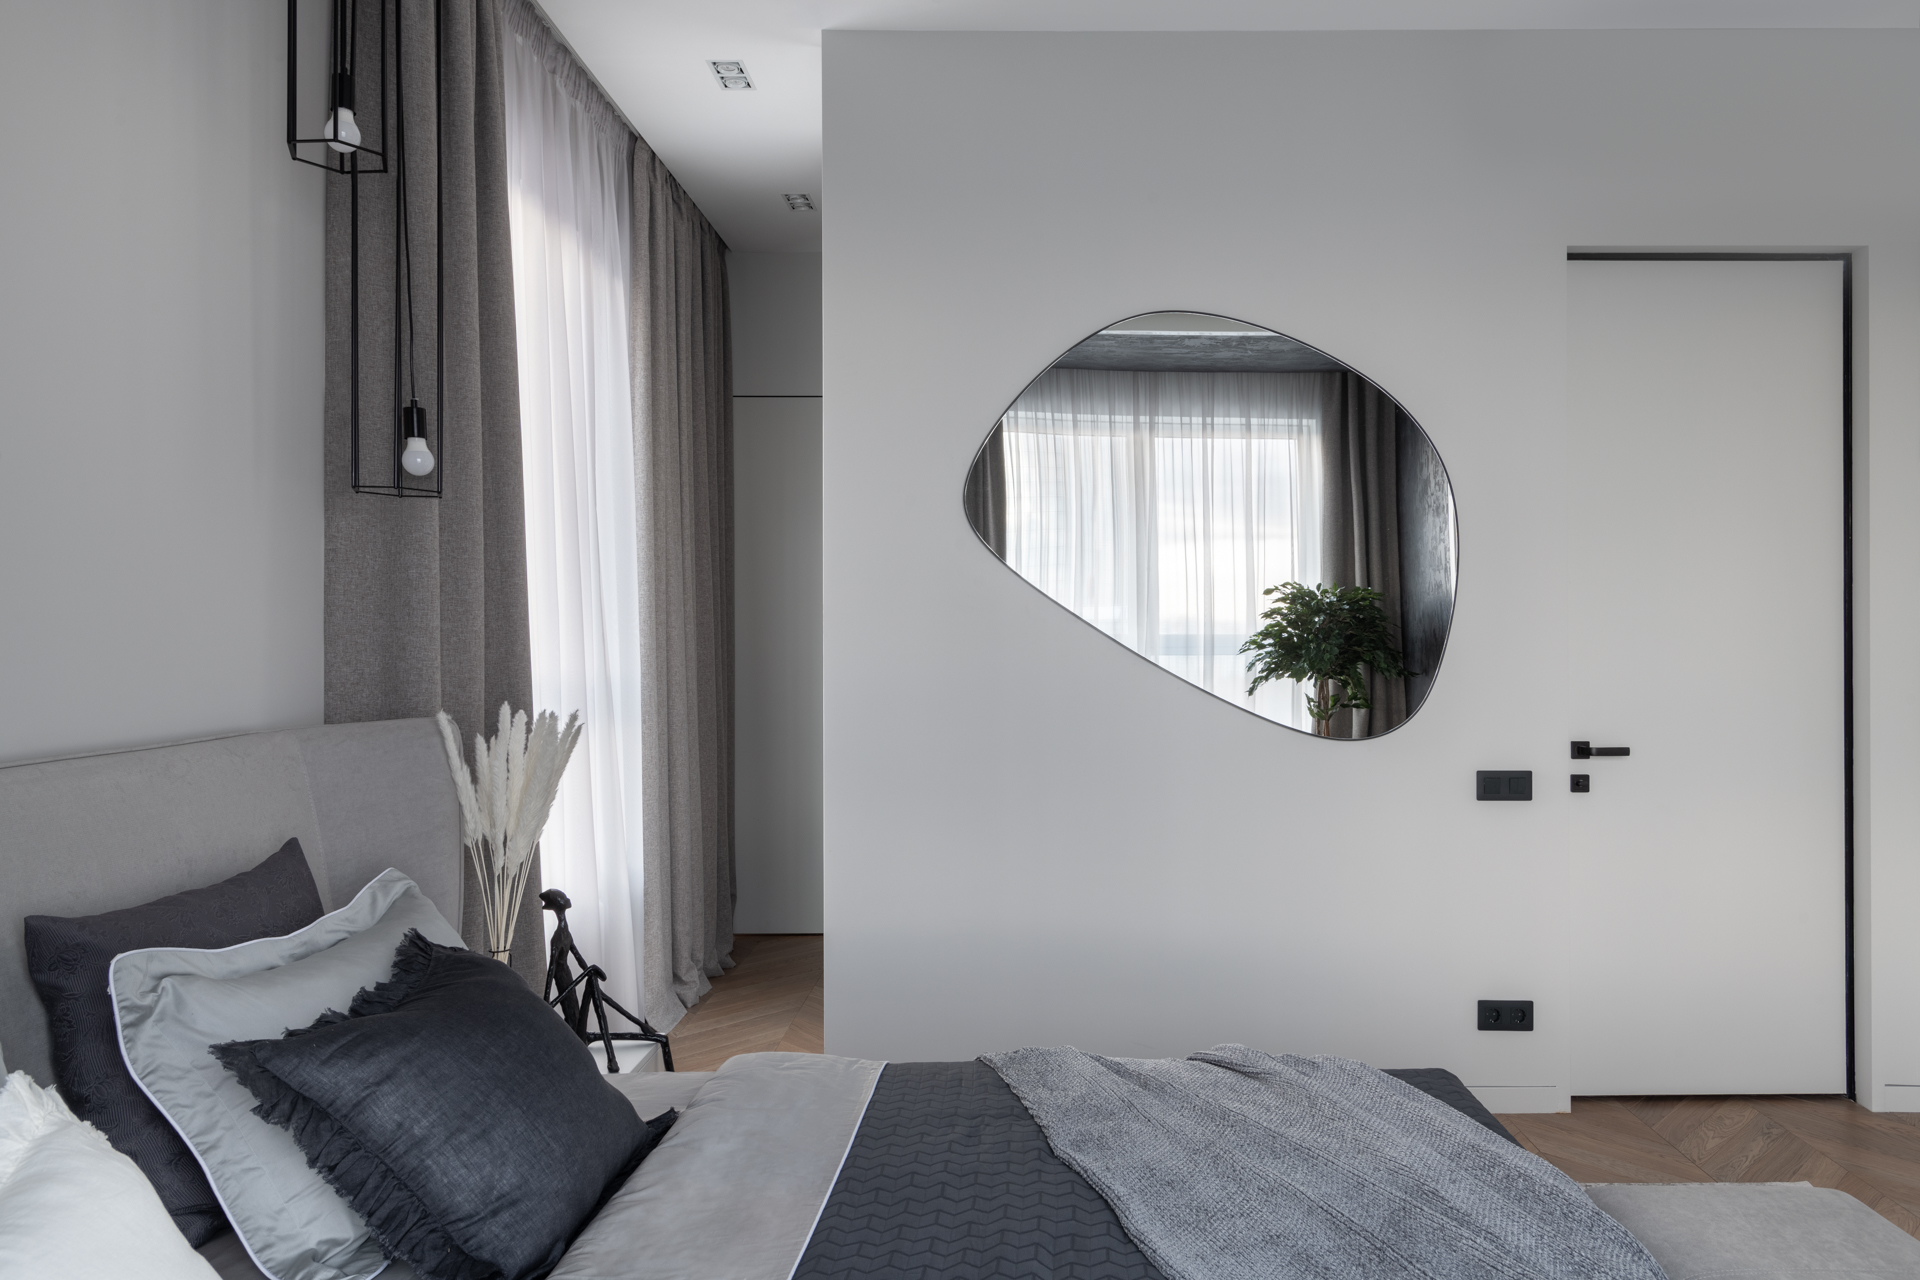 Phòng ngủ thiết kế tối giản nhưng gây ấn tượng nhờ tấm gương kiểu dáng đặc biệt, phản chiếu ô cửa sổ đầy nắng ấm cùng chậu cây cảnh để tăng thêm sắc xanh cho không gian.